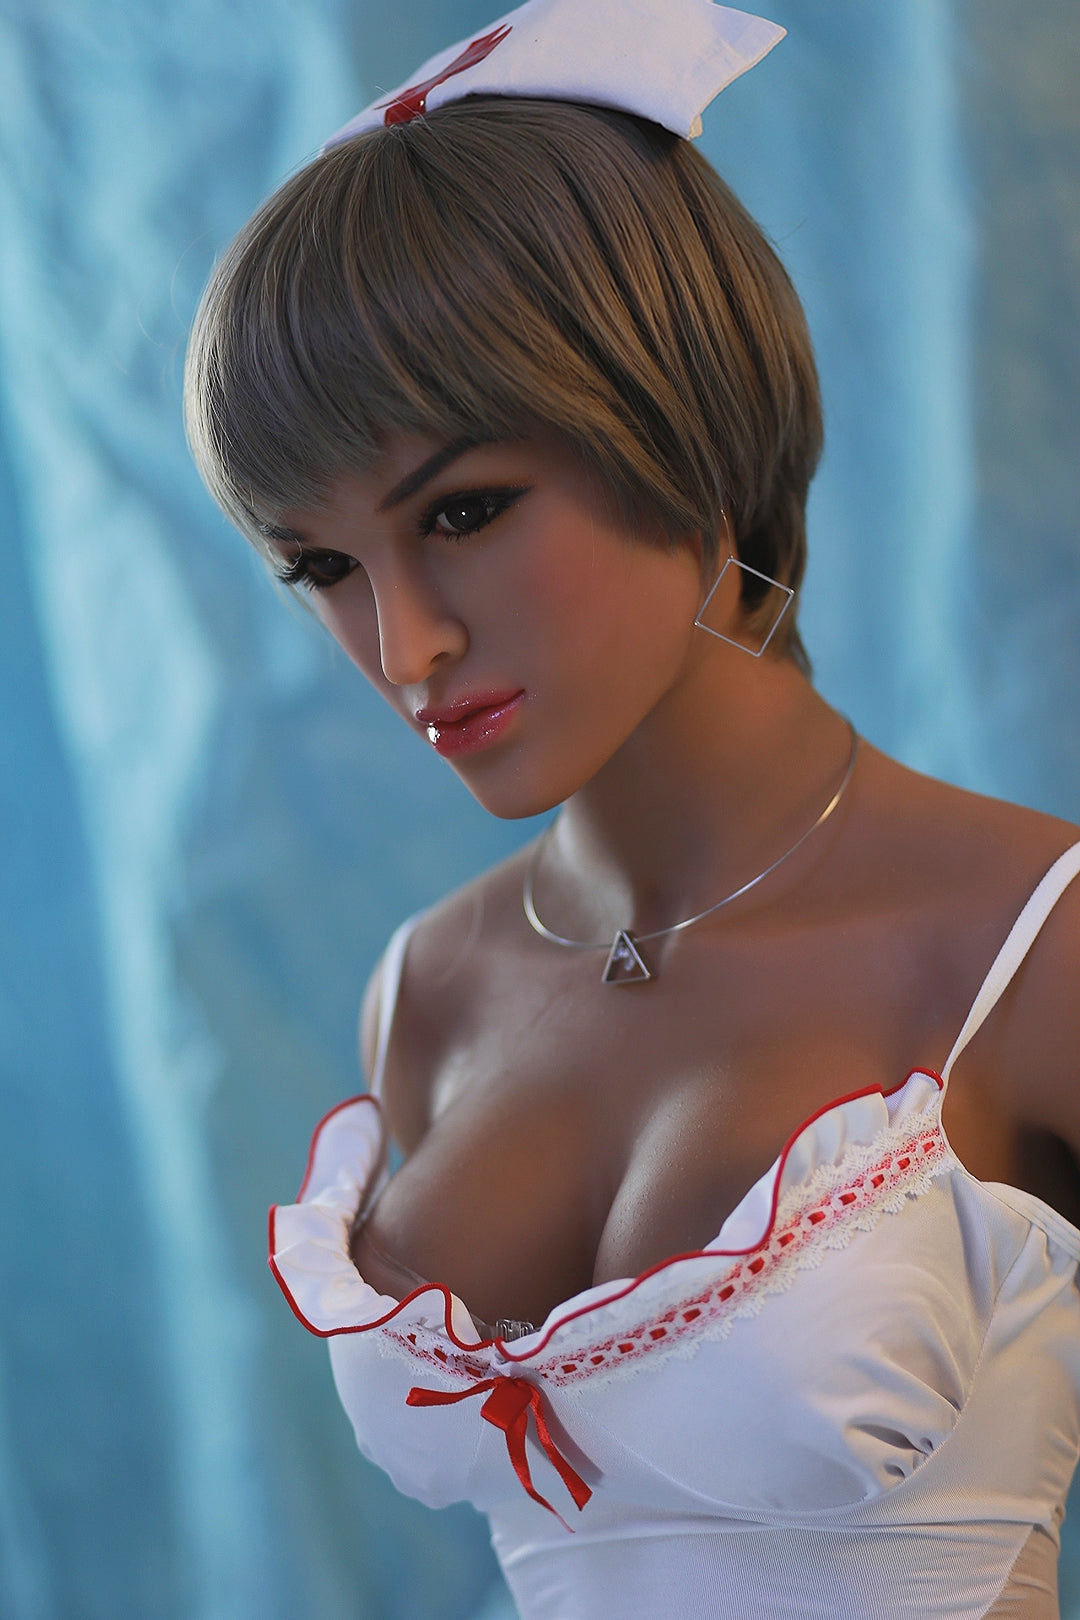 Neodoll Sugar Babe - Kaylin - Realistic Sex Doll - Gel Breast - Uterus - 168cm - Tan